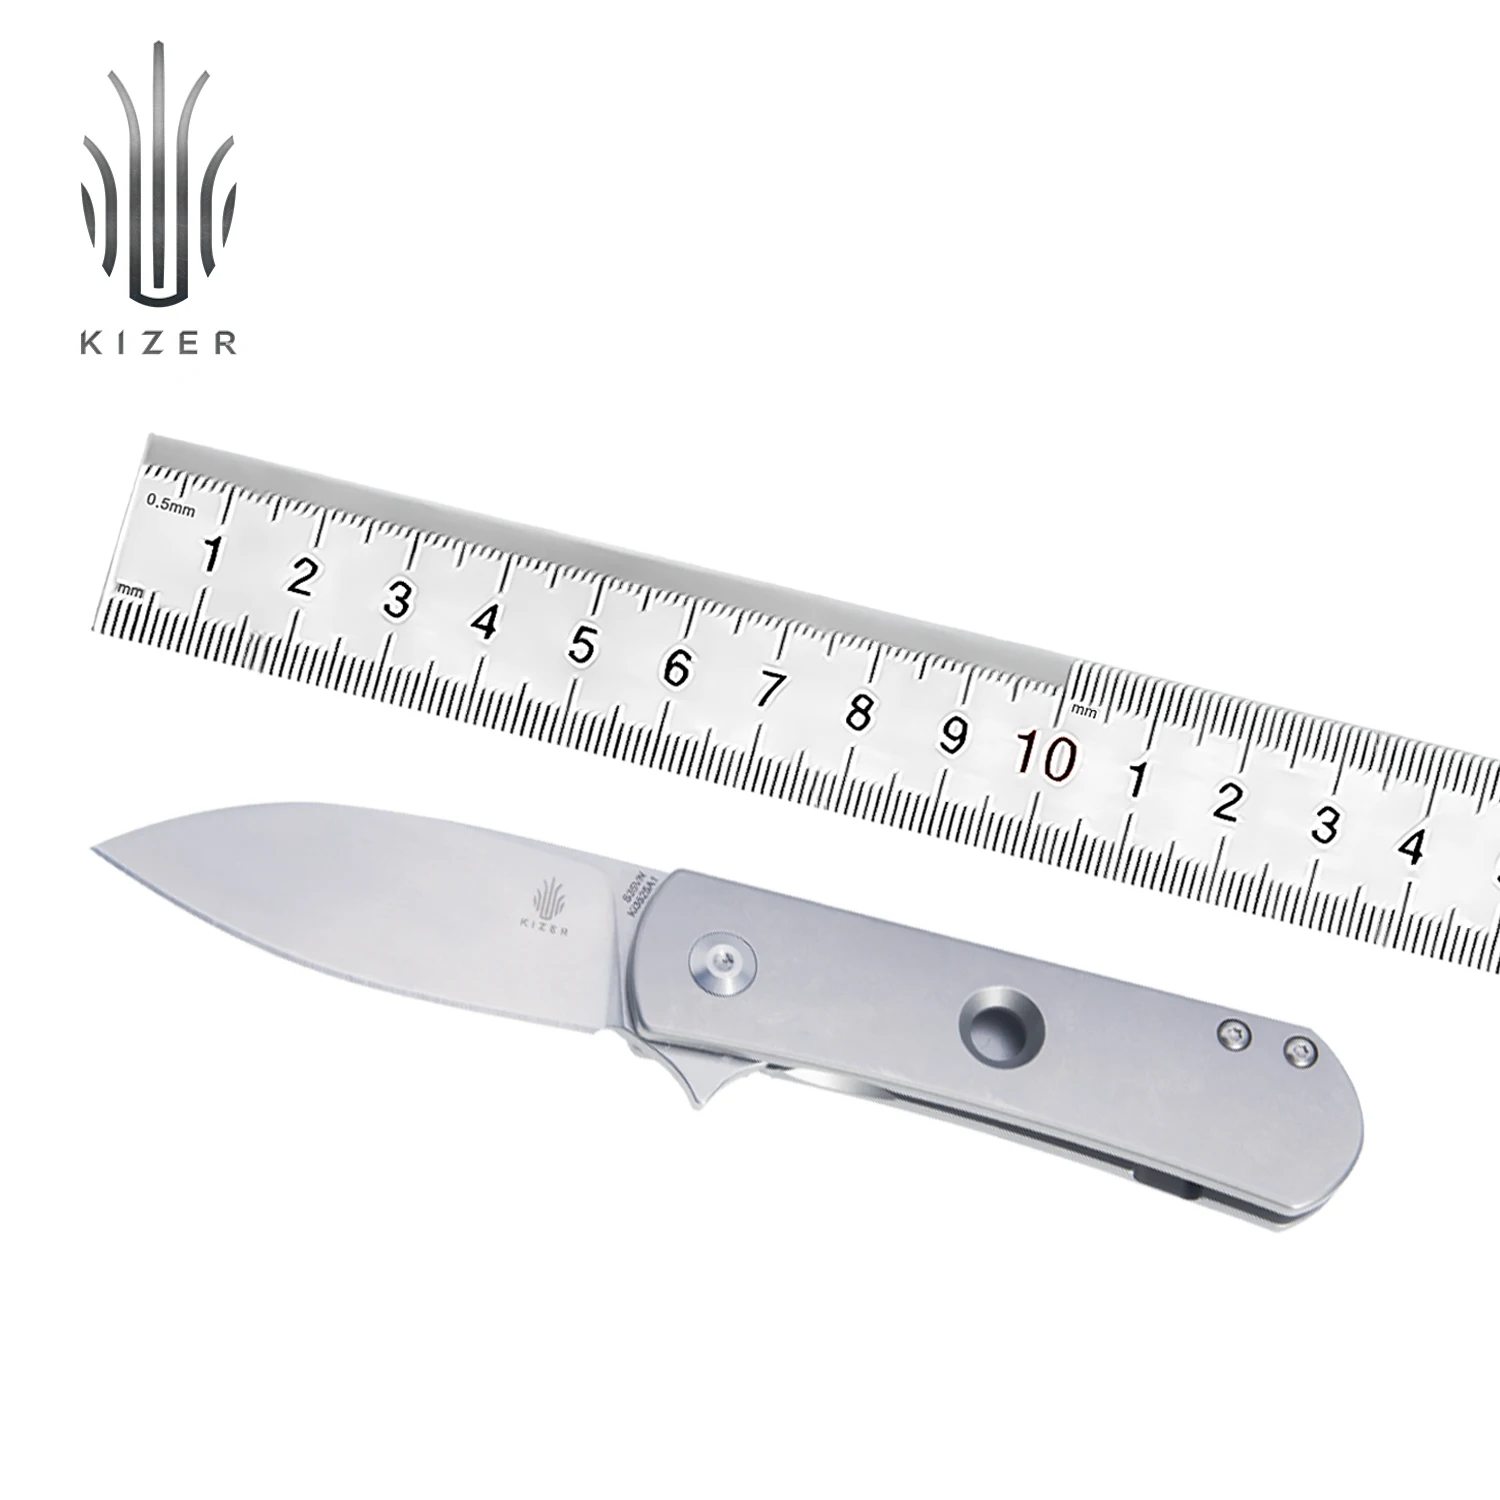 Мини-нож Kizer Yorkie KI3525A1 нож для повседневного использования высококачественный